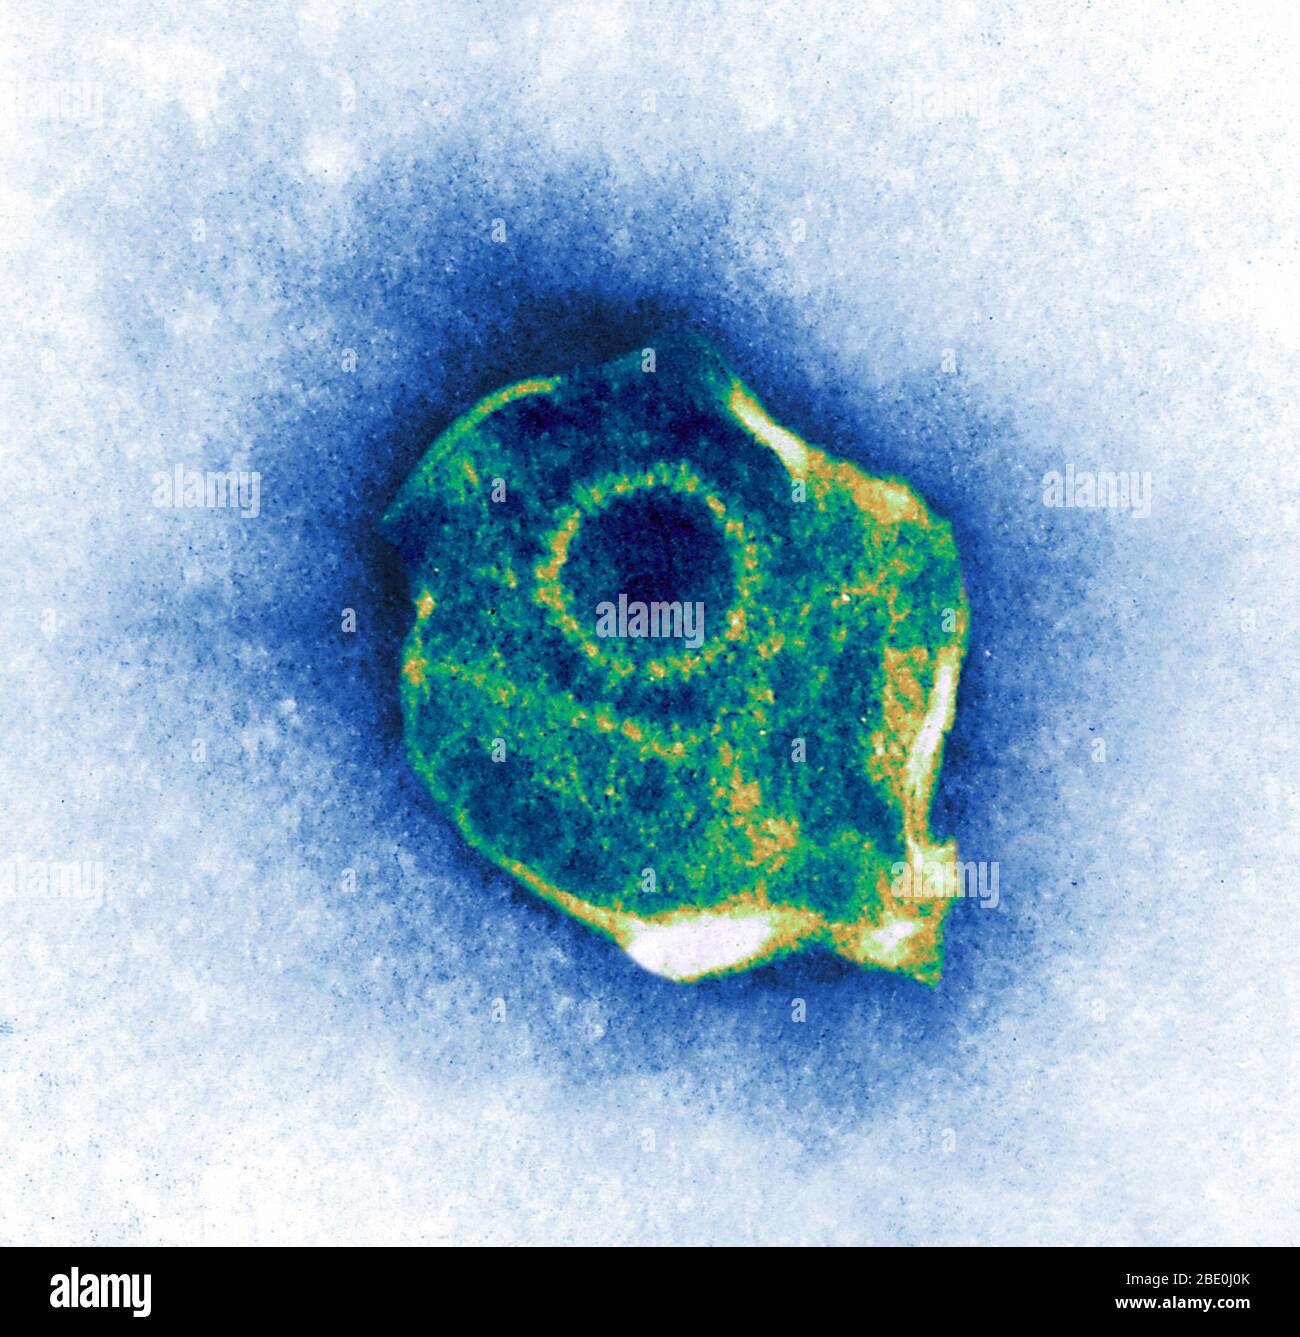 Farblich verbesserte Transmissionselektronenmikrographie (TEM) des Herpes Simplex Virus. Stockfoto